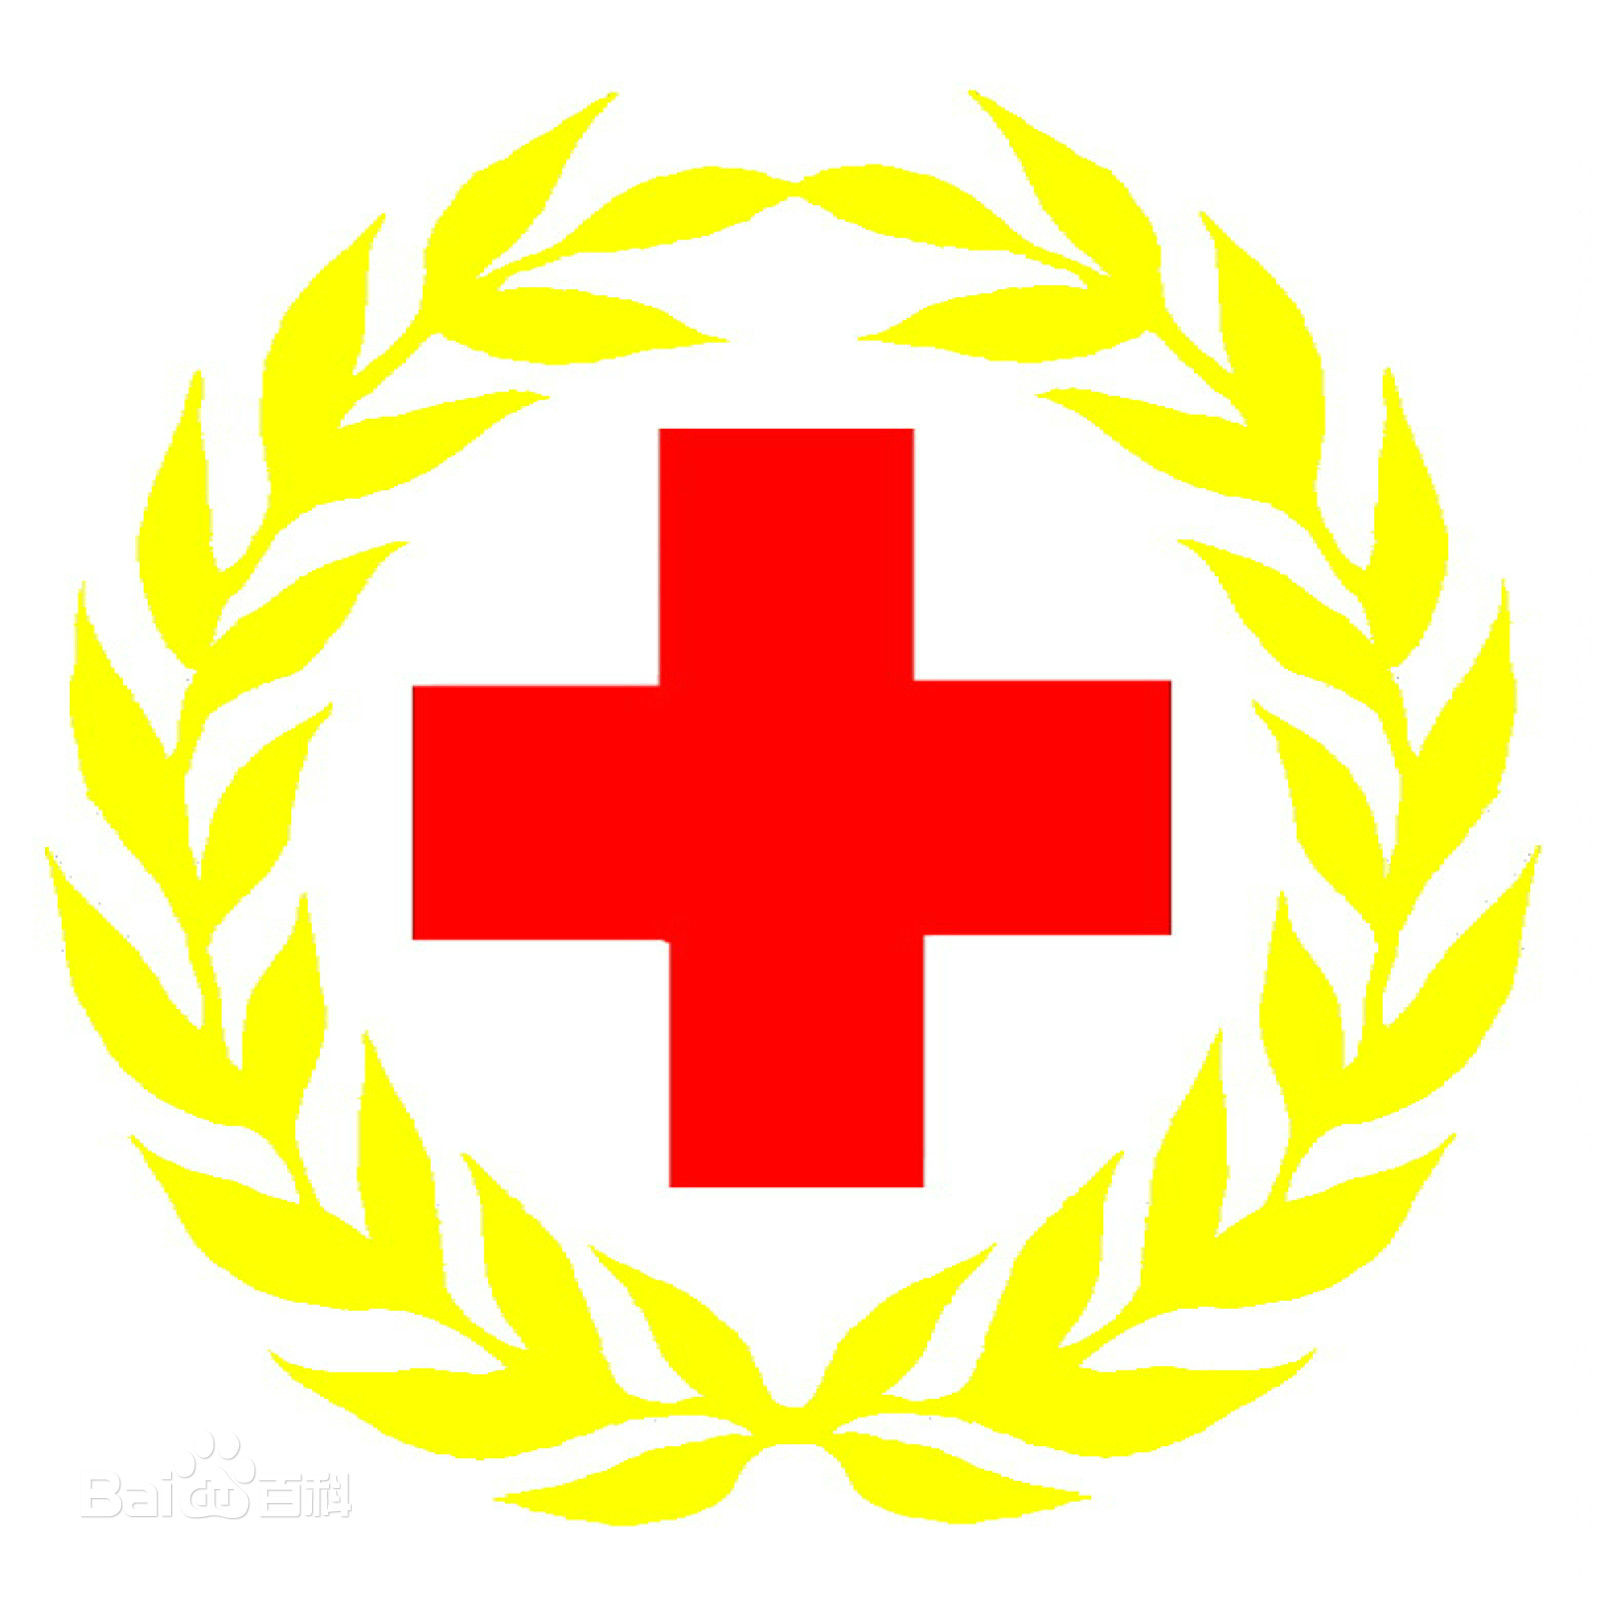 中國紅十字基會